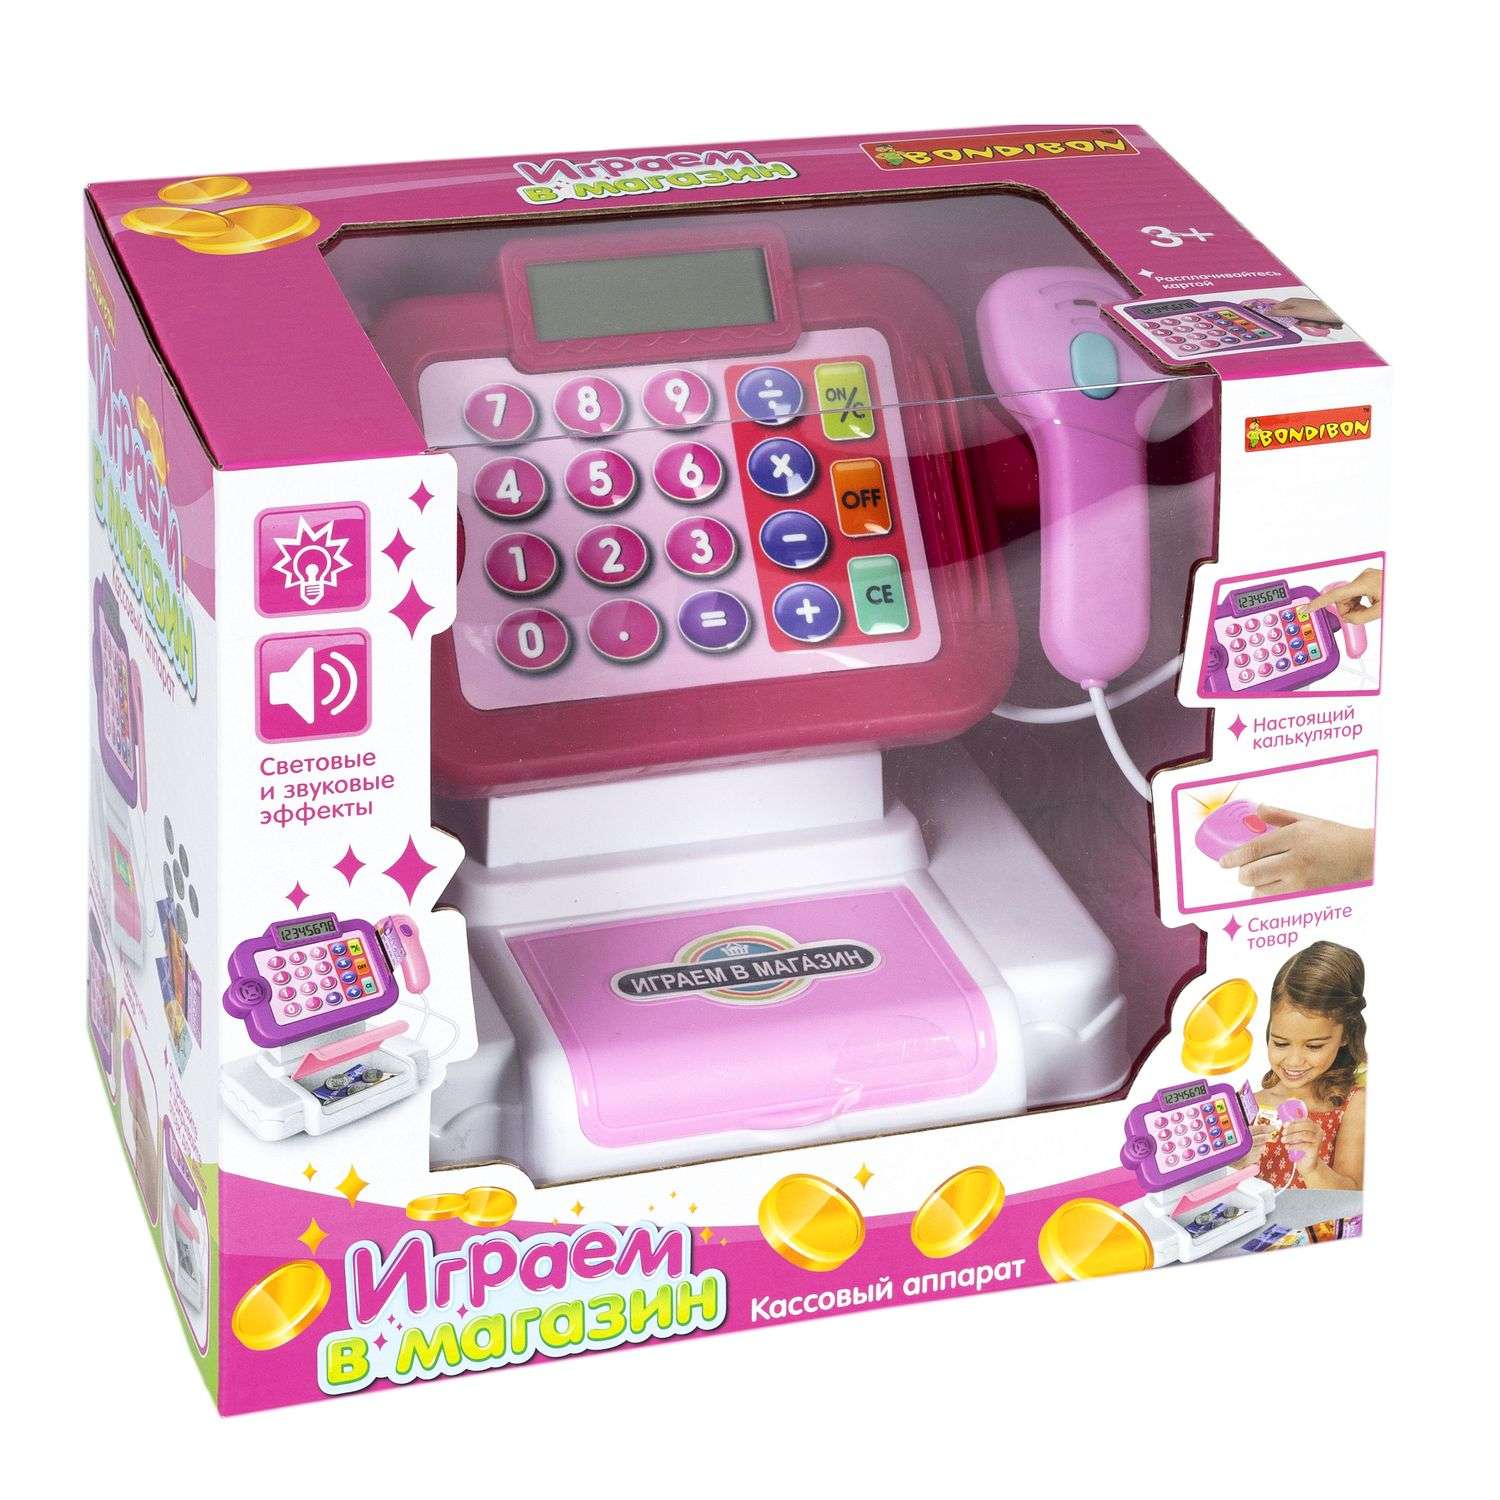 Развивающий игровой набор BONDIBON детская касса со сканером калькулятором и аксессуарами 14 предметов - фото 3